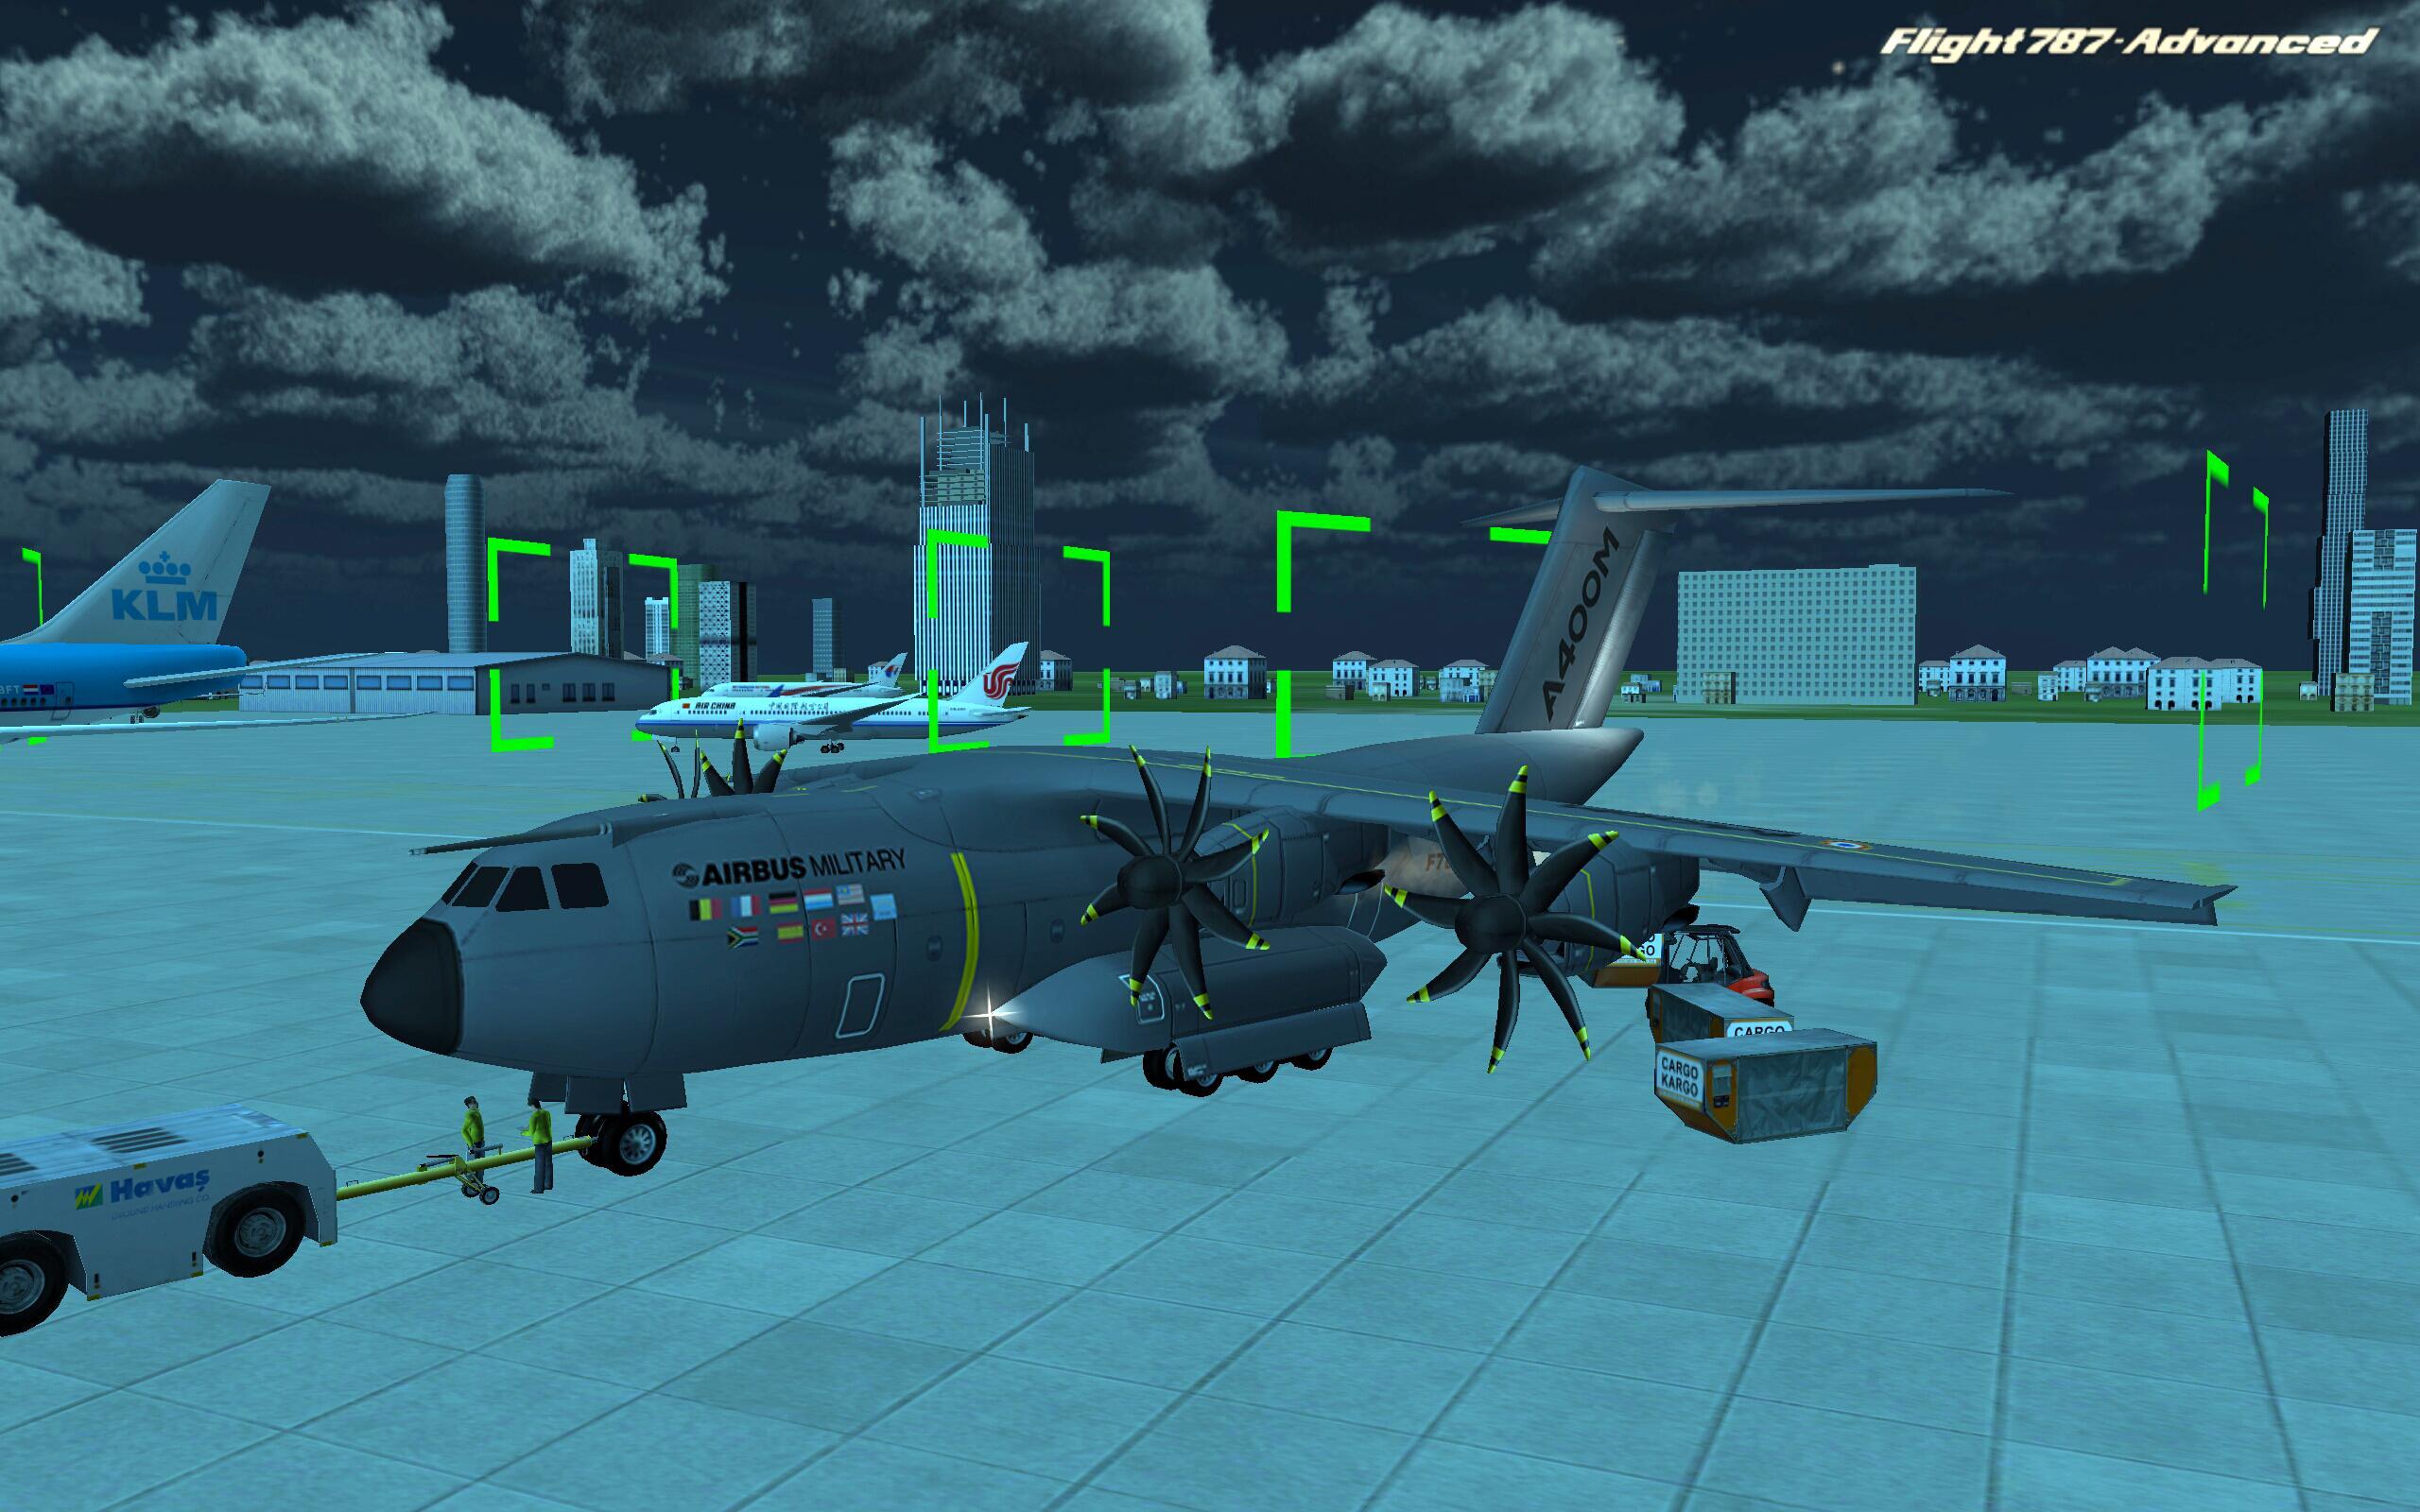 Новая игра самолета. Flight 787 - Advanced. Игры про самолеты. Симулятор военного самолета. Игры про самолёты на андроид.